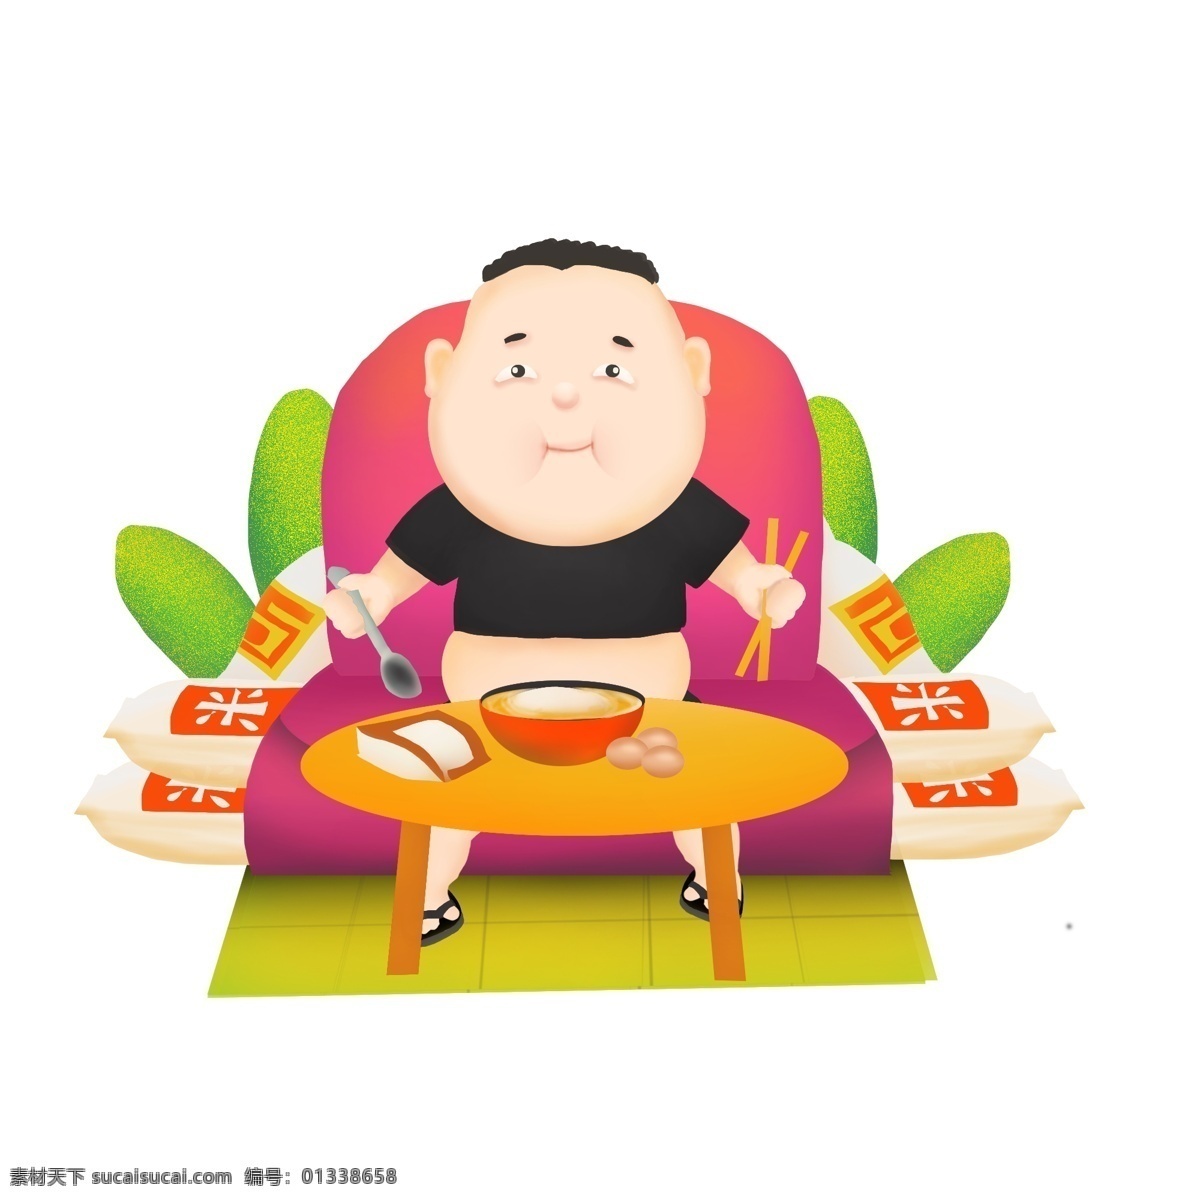 商用 高清 手绘 各种 胖子 不 运动 胖胖 吃饭 饭桌 可商用 大米 卡通人物形象 植物